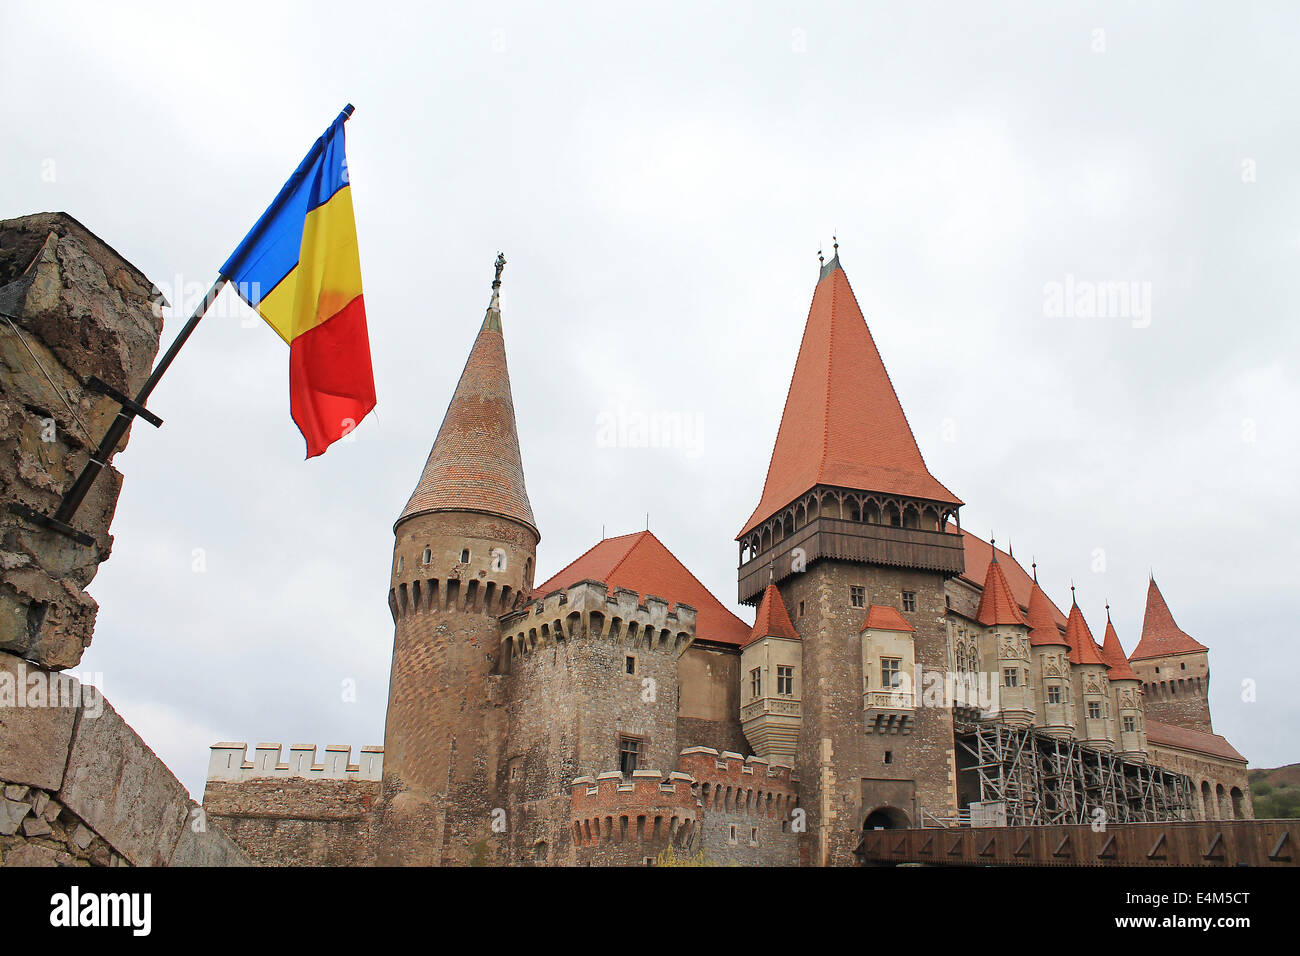 The Hunyad or Corvin Castle from Hunedoara, Transylvania, Romania with the Romanian flag Stock Photo